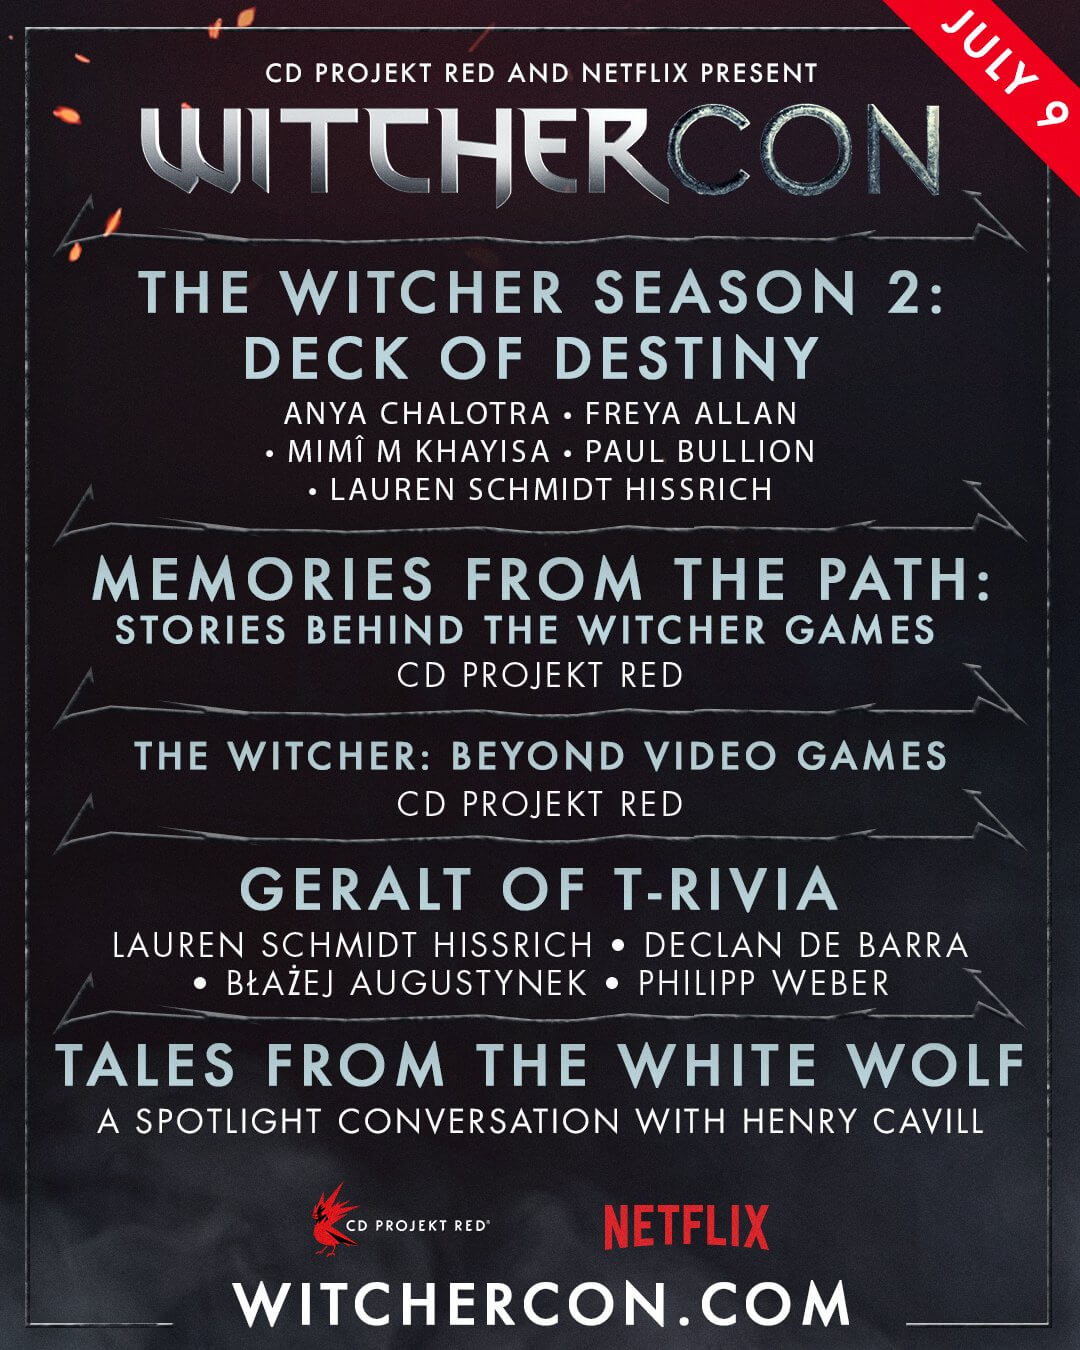 witchercon-2021-schedule-1.jpg